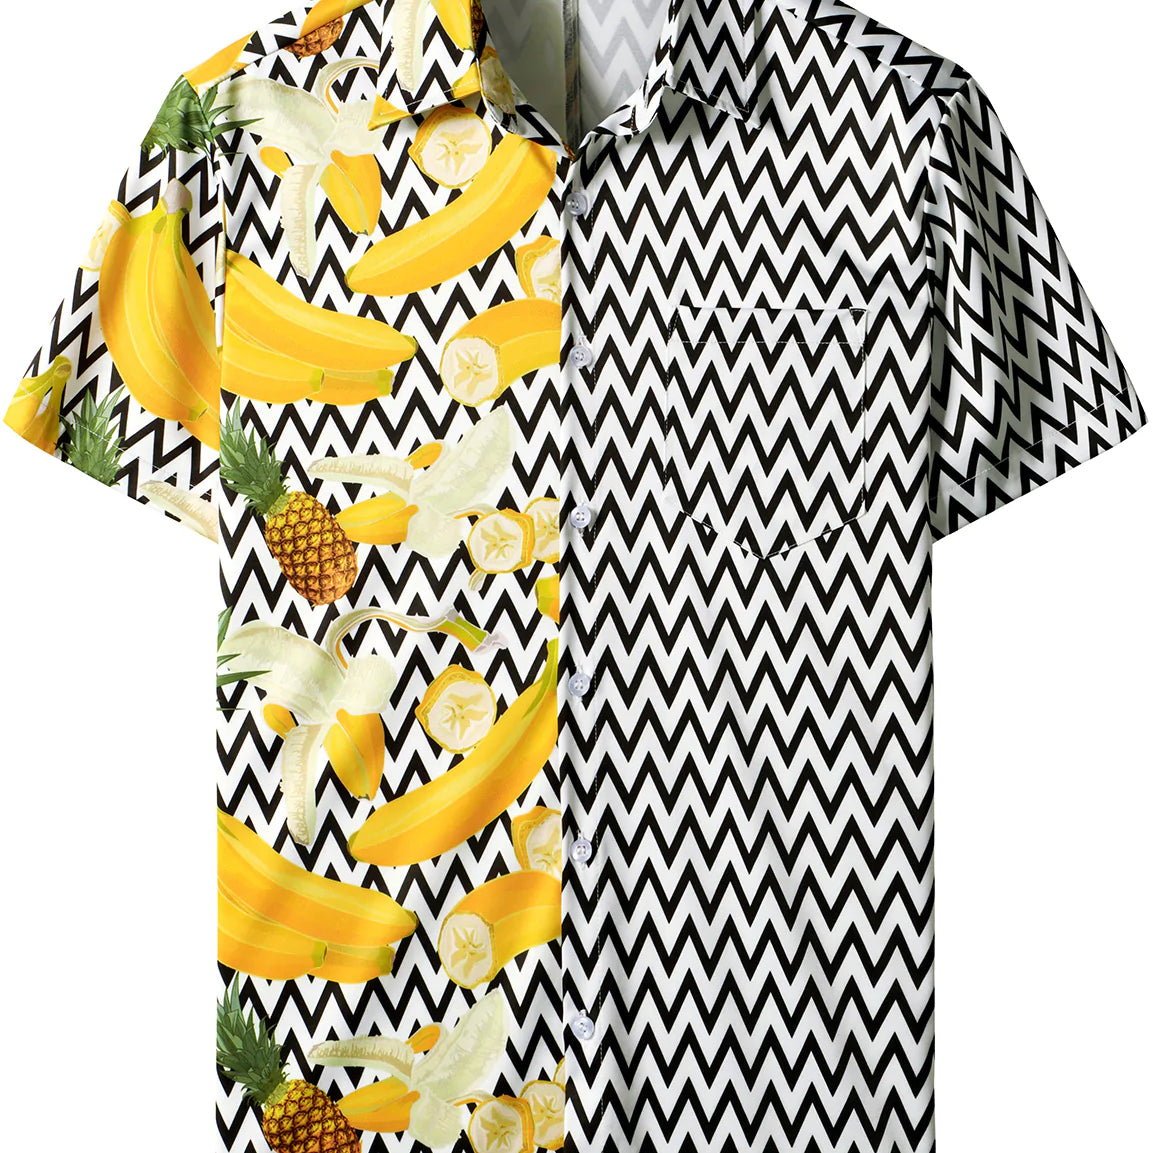 Homme banane ananas noir et blanc vague imprimé poche vacances fruits tropicaux à manches courtes été vacances plage chemise